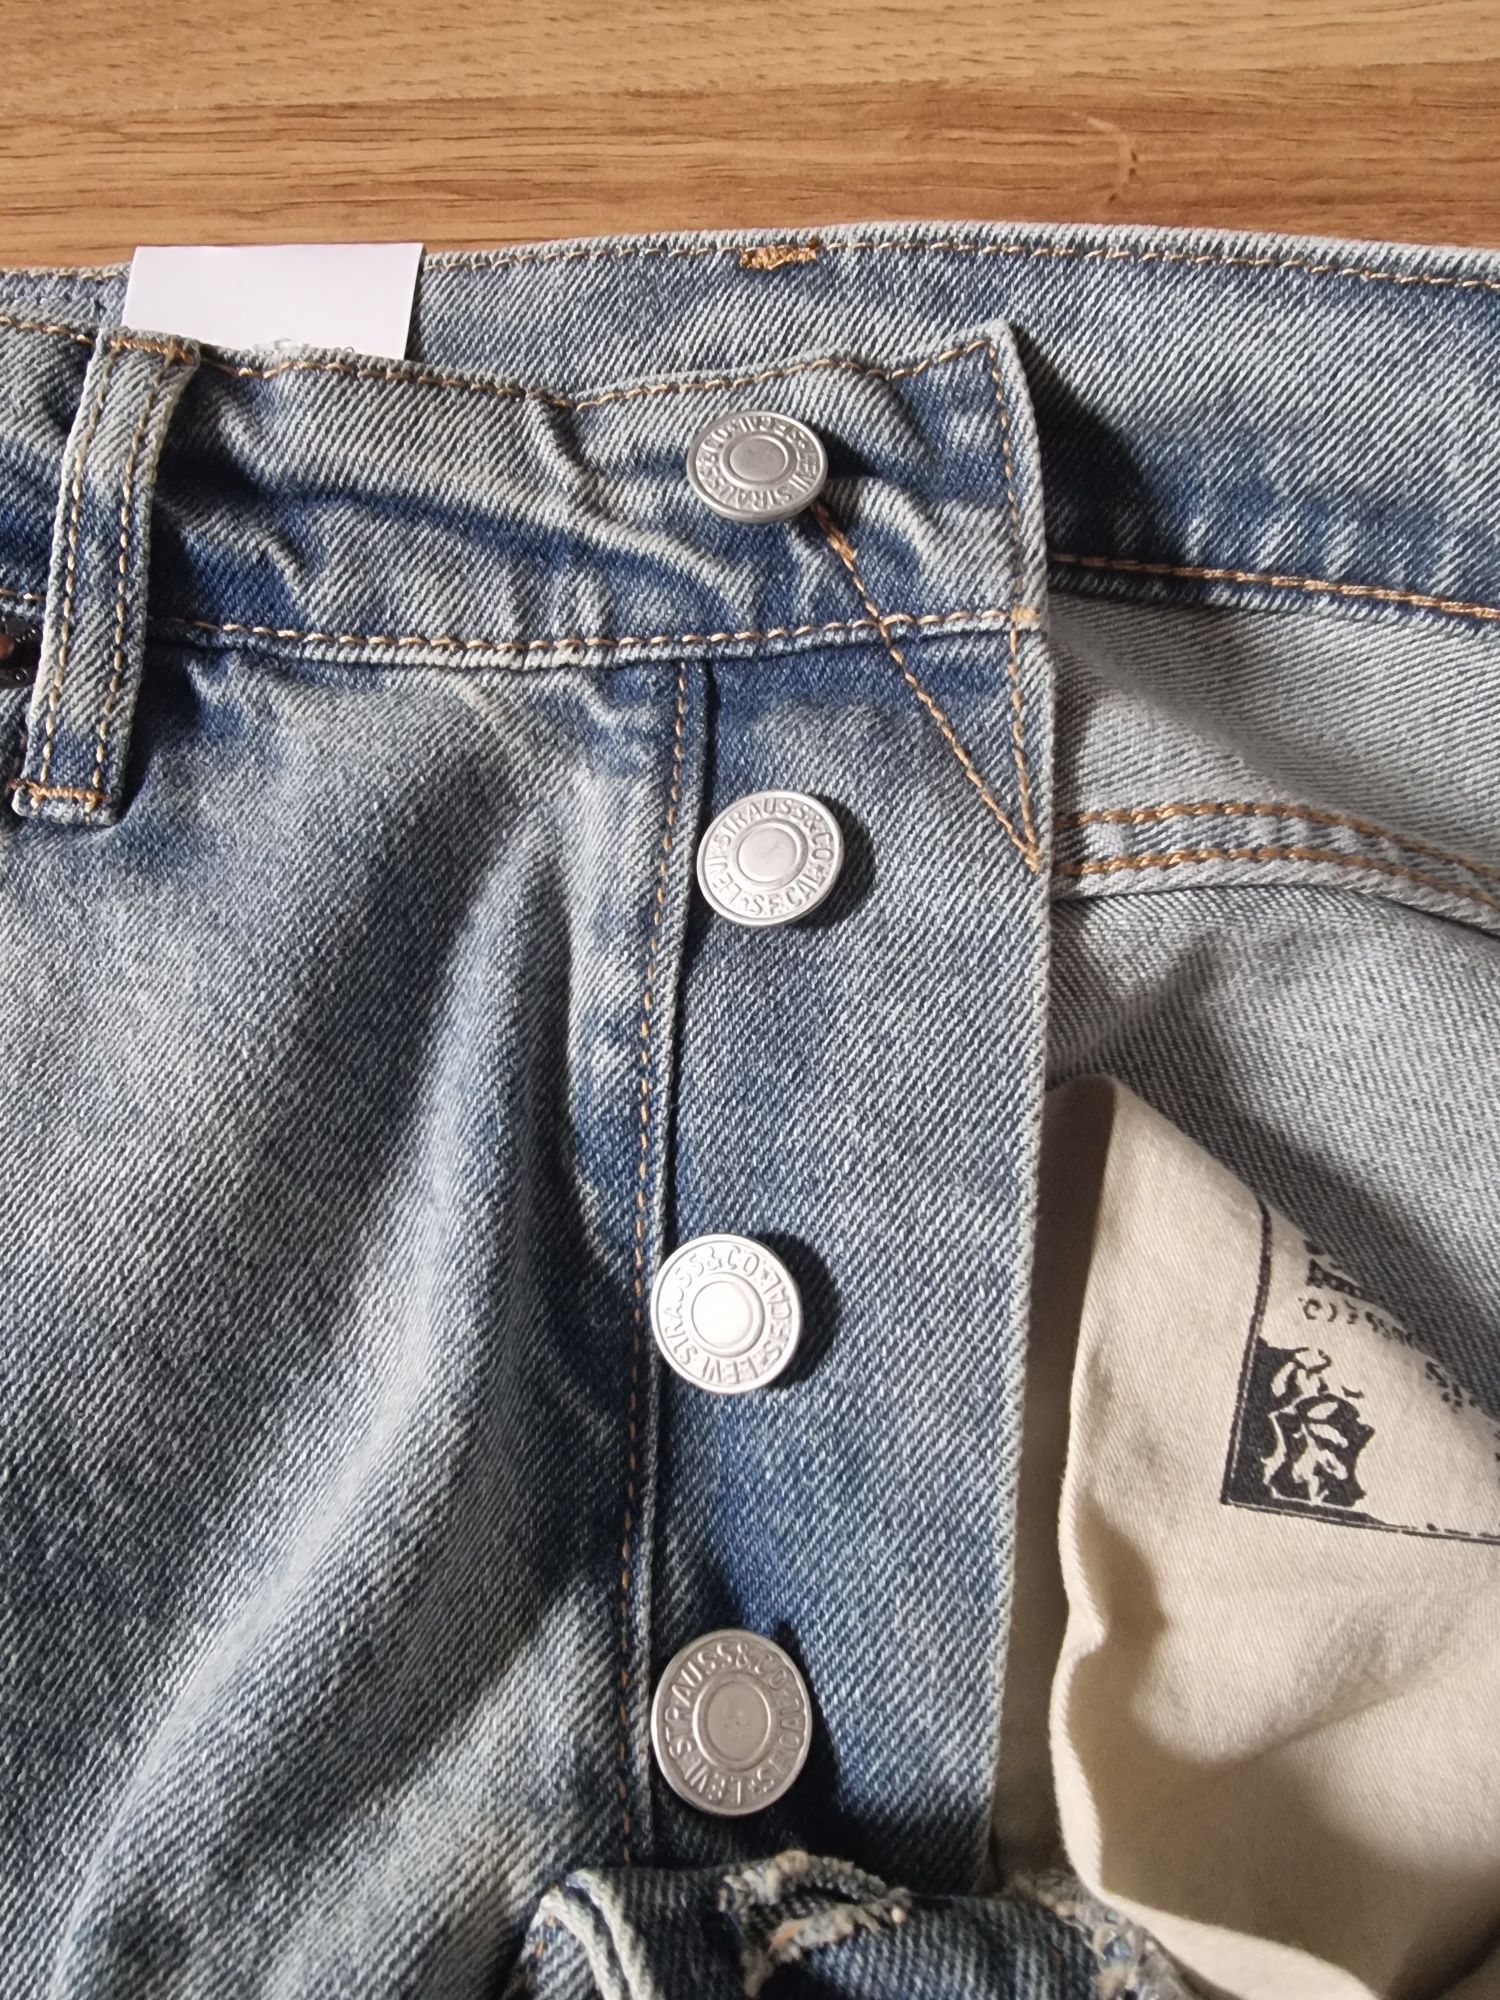 Spodnie jeansowe jasno niebieskie levis 501 W31 L32